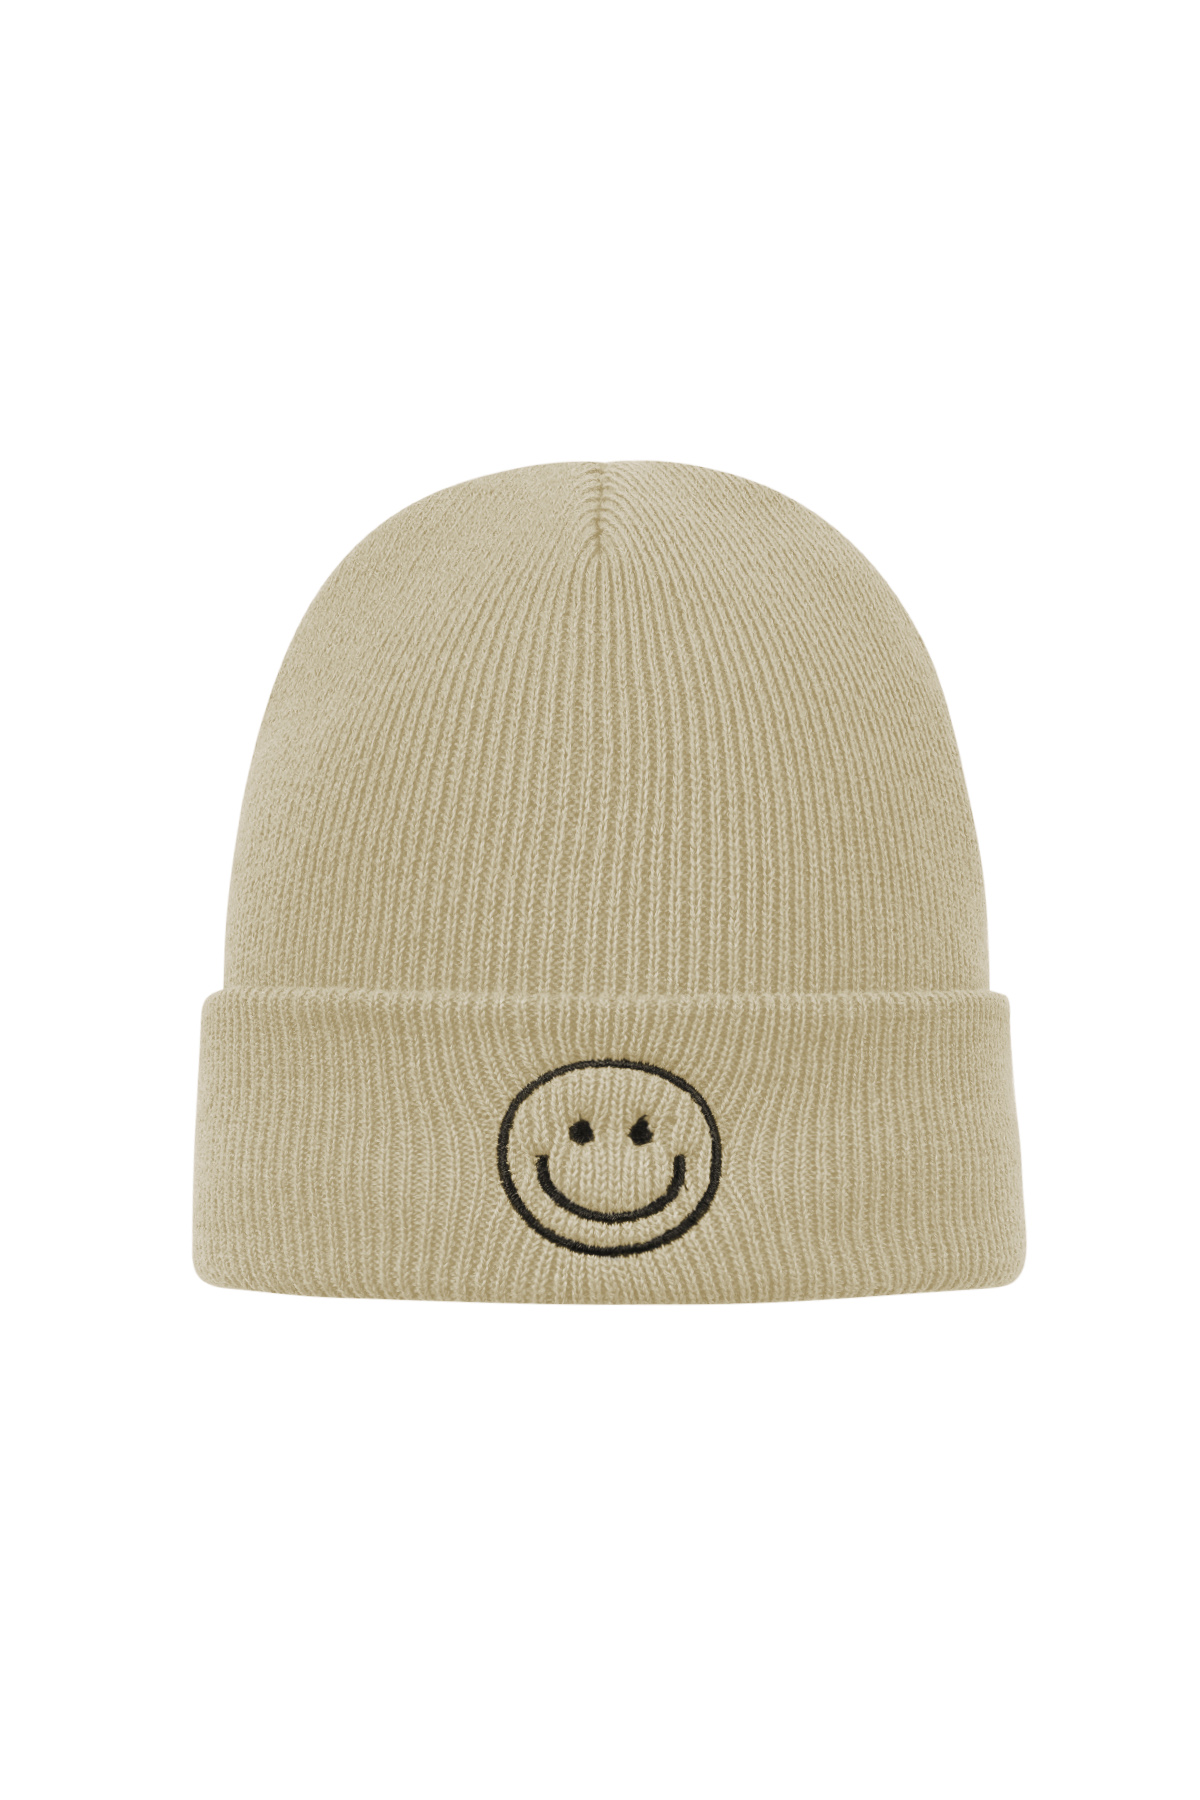 Bunte Mütze mit Smiley – beige